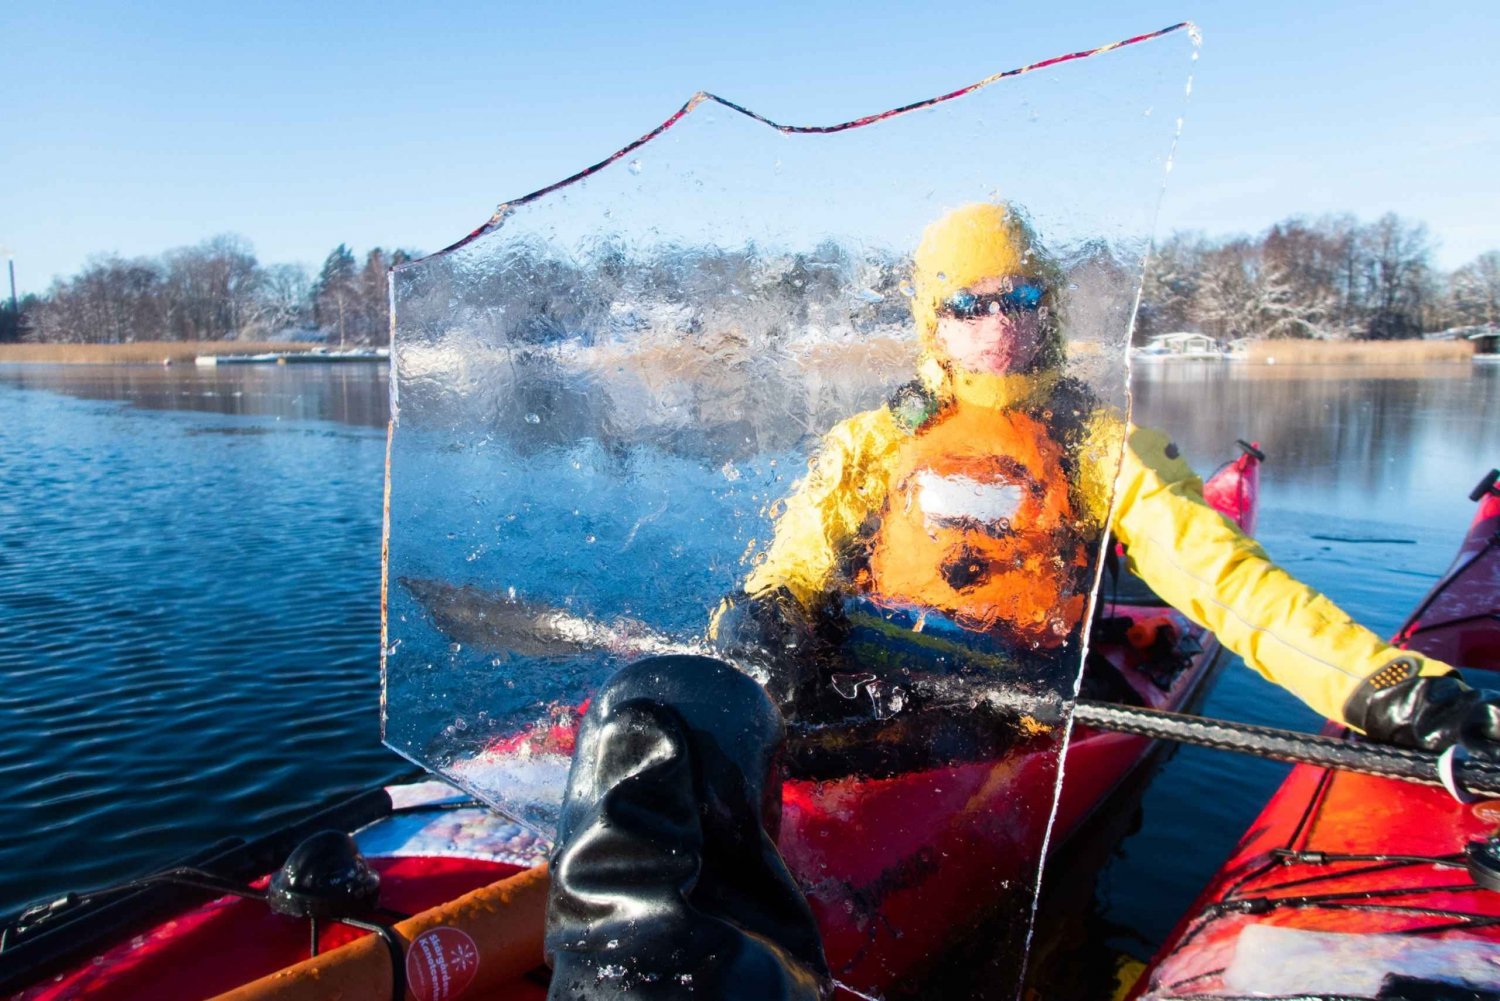 Danzica: Tour invernale in kayak